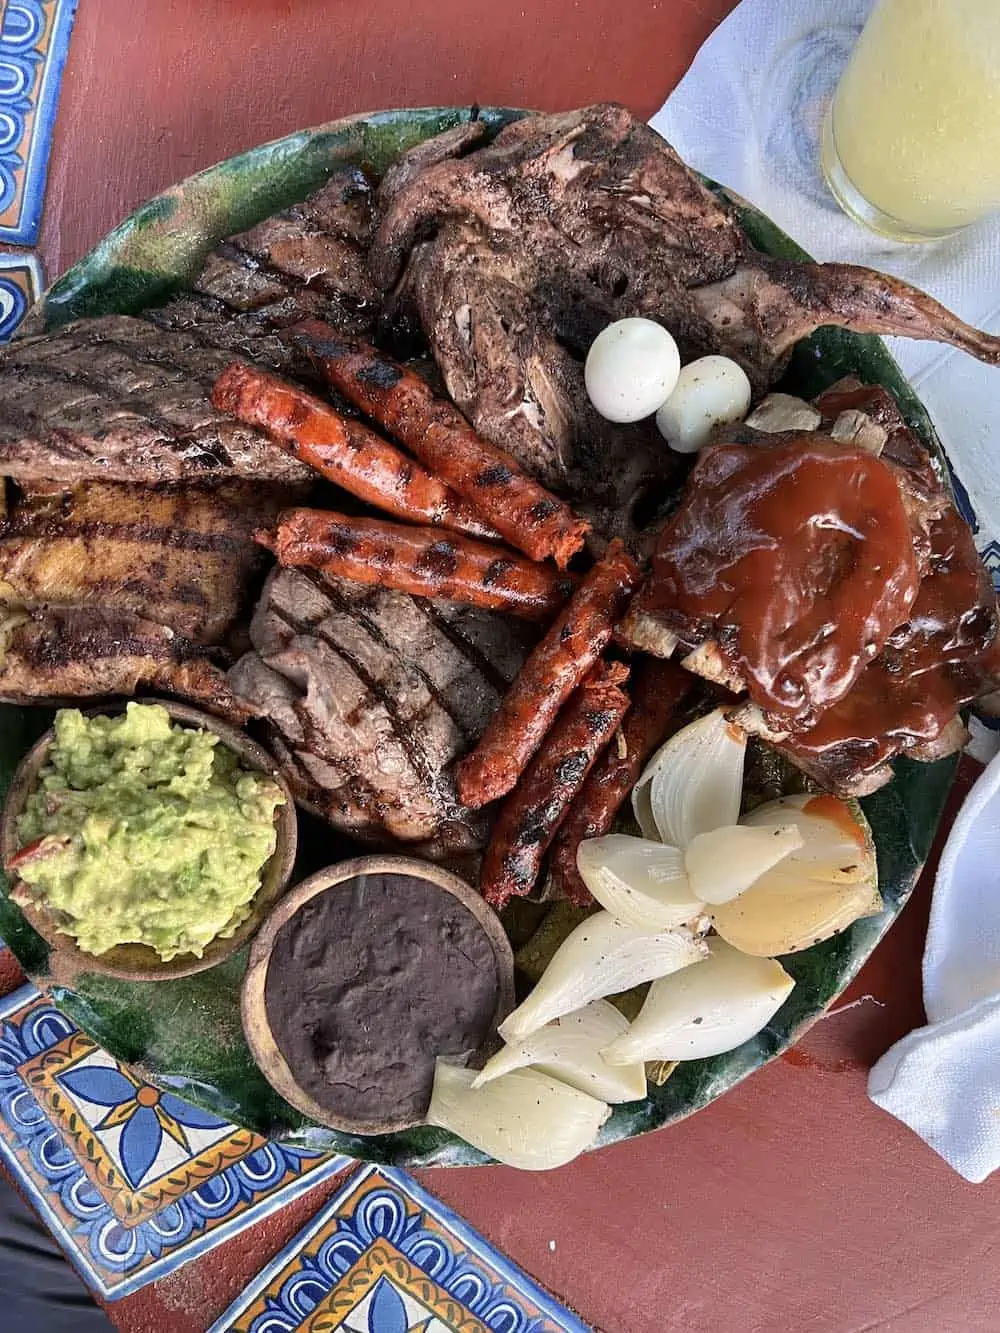 A platter of grilled meats at el rincon de los almendras restaurant in Puerto Escondido. 